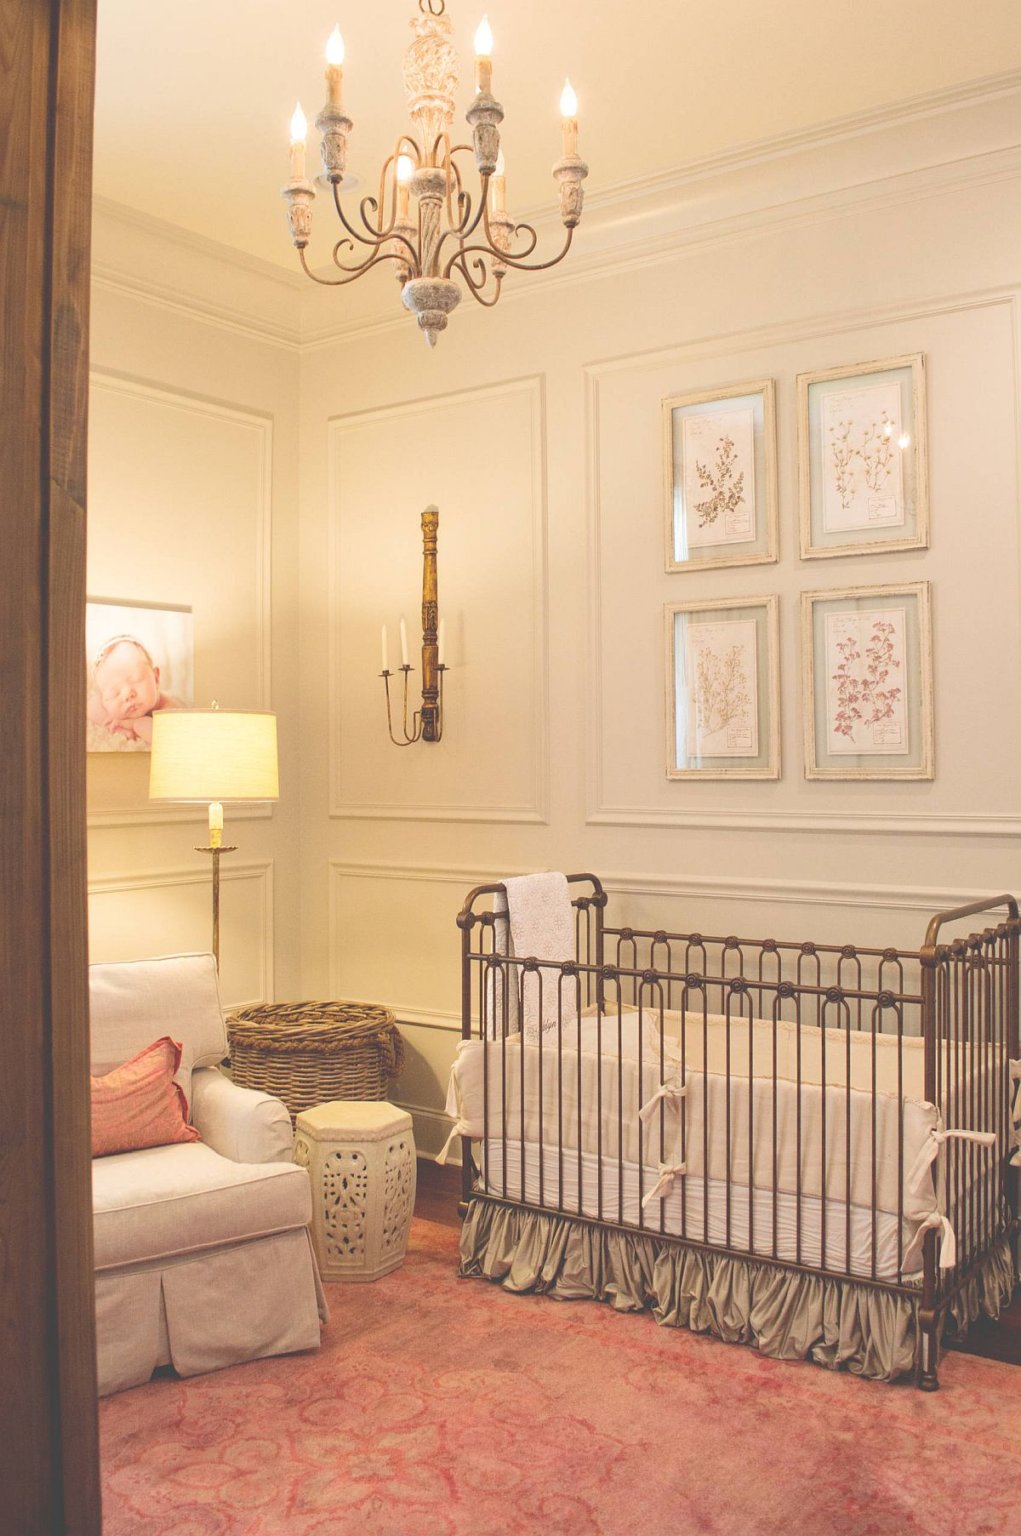 Những điểm nhấn màu hồng cam nhạt và tấm thảm tạo thêm nét duyên dáng, đáng yêu trong phòng cho trẻ sơ sinh này.